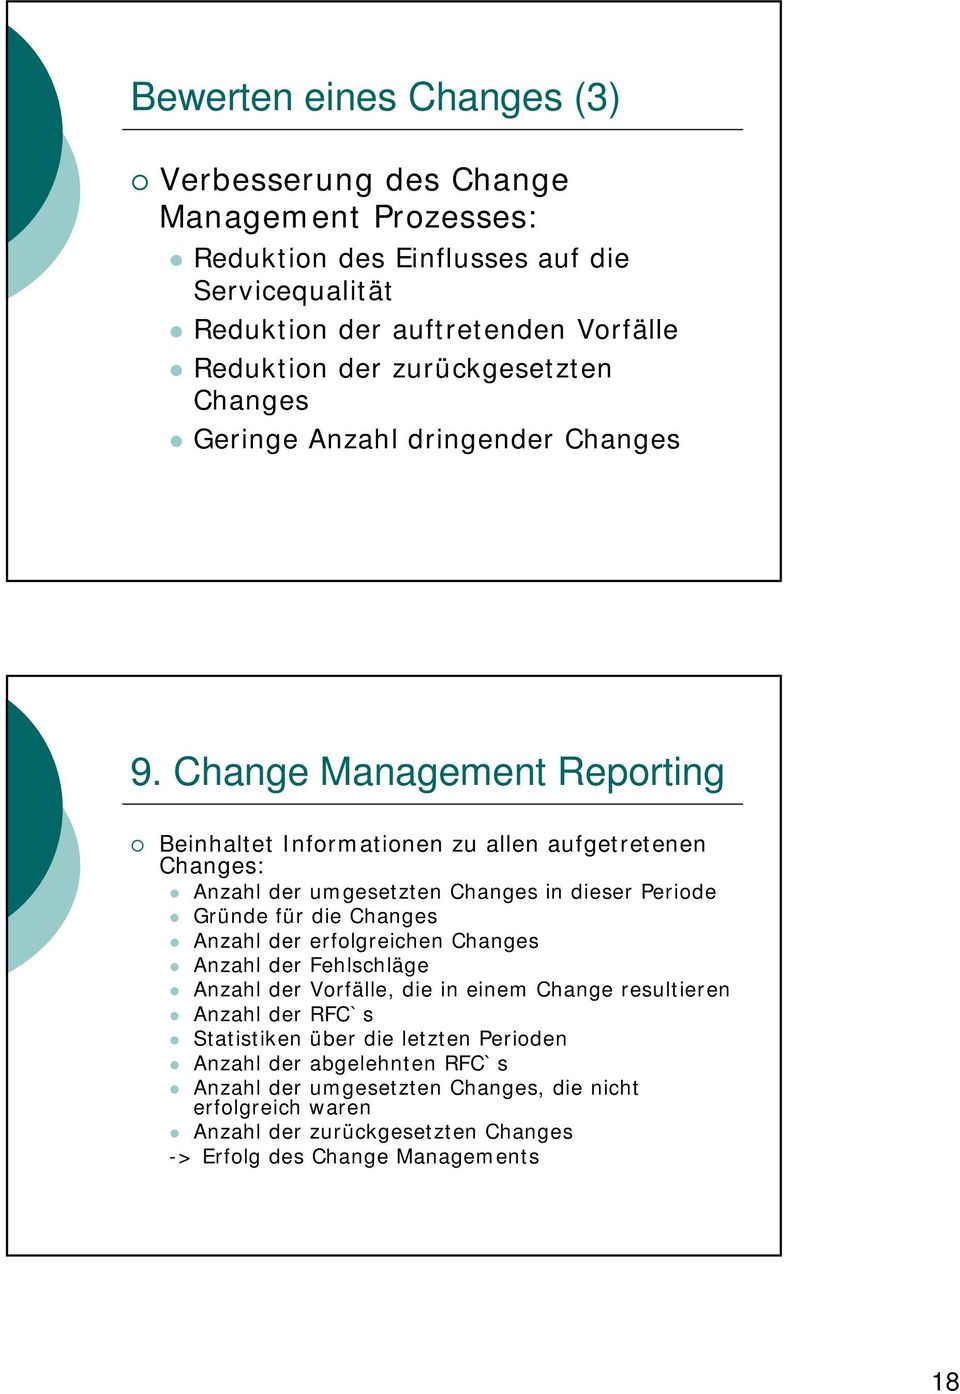 Change Management Reporting Beinhaltet Informationen zu allen aufgetretenen Changes: Anzahl der umgesetzten Changes in dieser Periode Gründe für die Changes Anzahl der